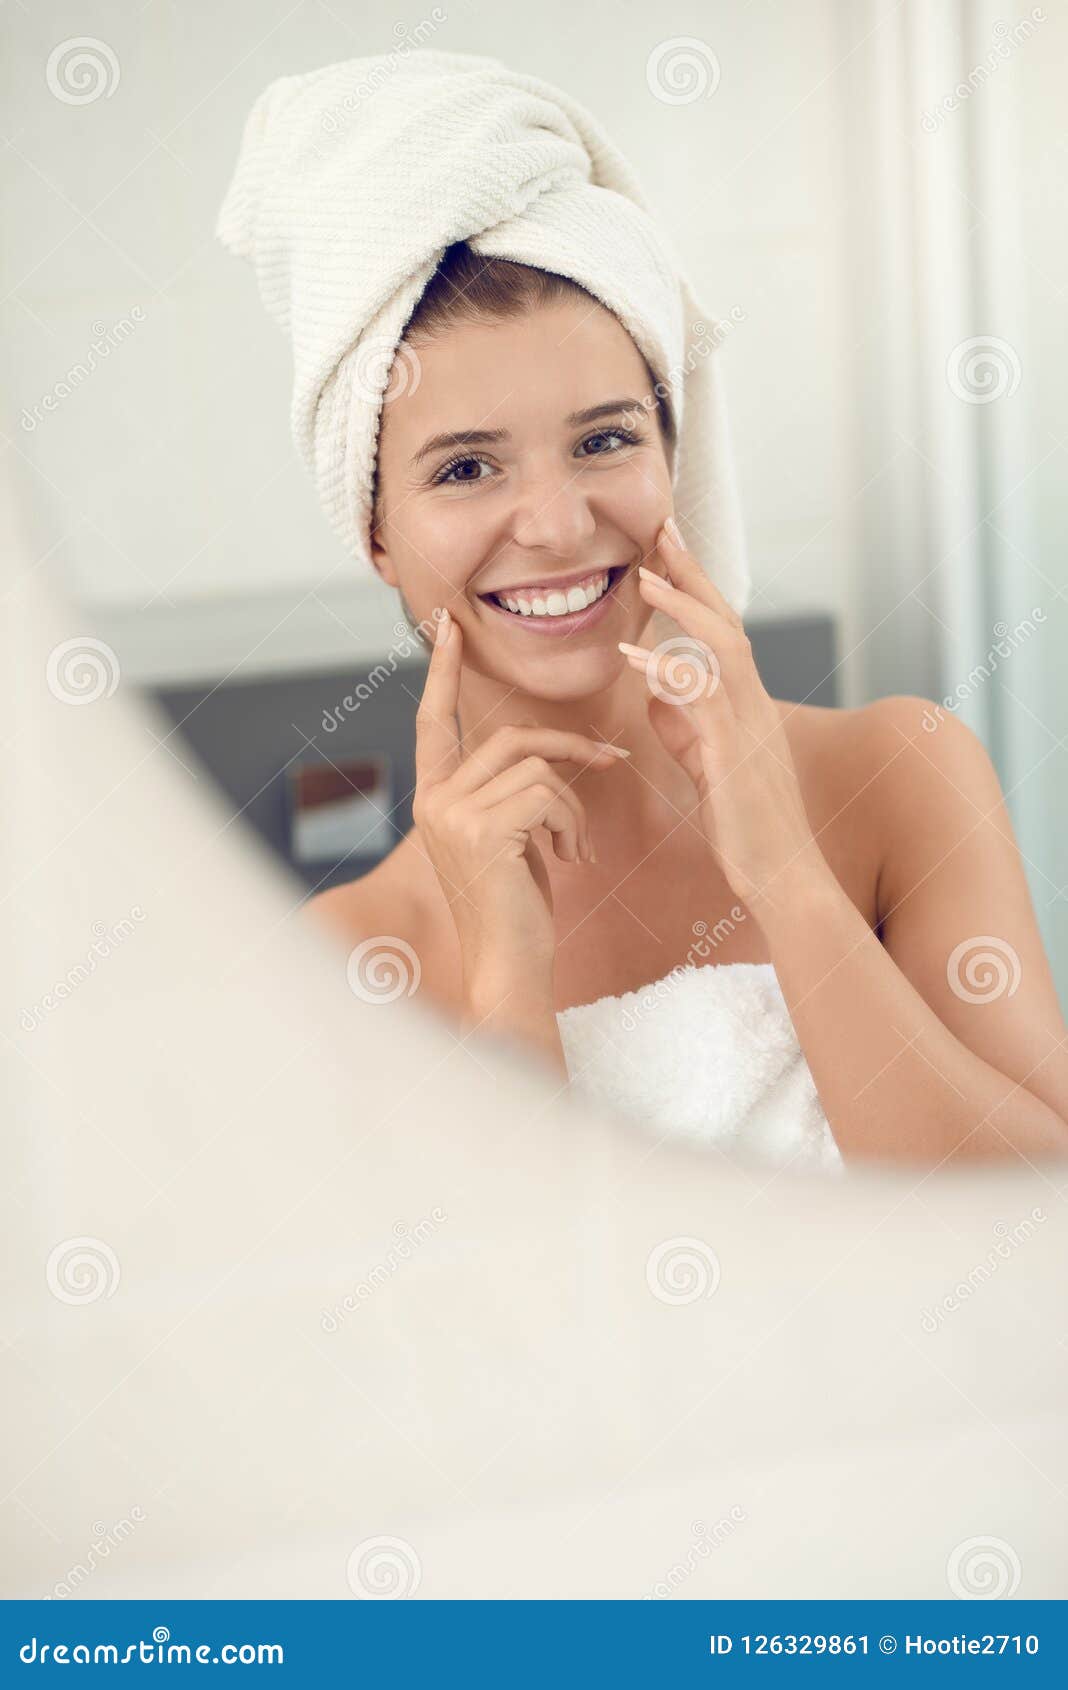 Женщина после ванной. Красивая девушка в полотенце. Улыбающаяся девушка в полотенце. Девушка после душа. Молодые девушки в полотенце.